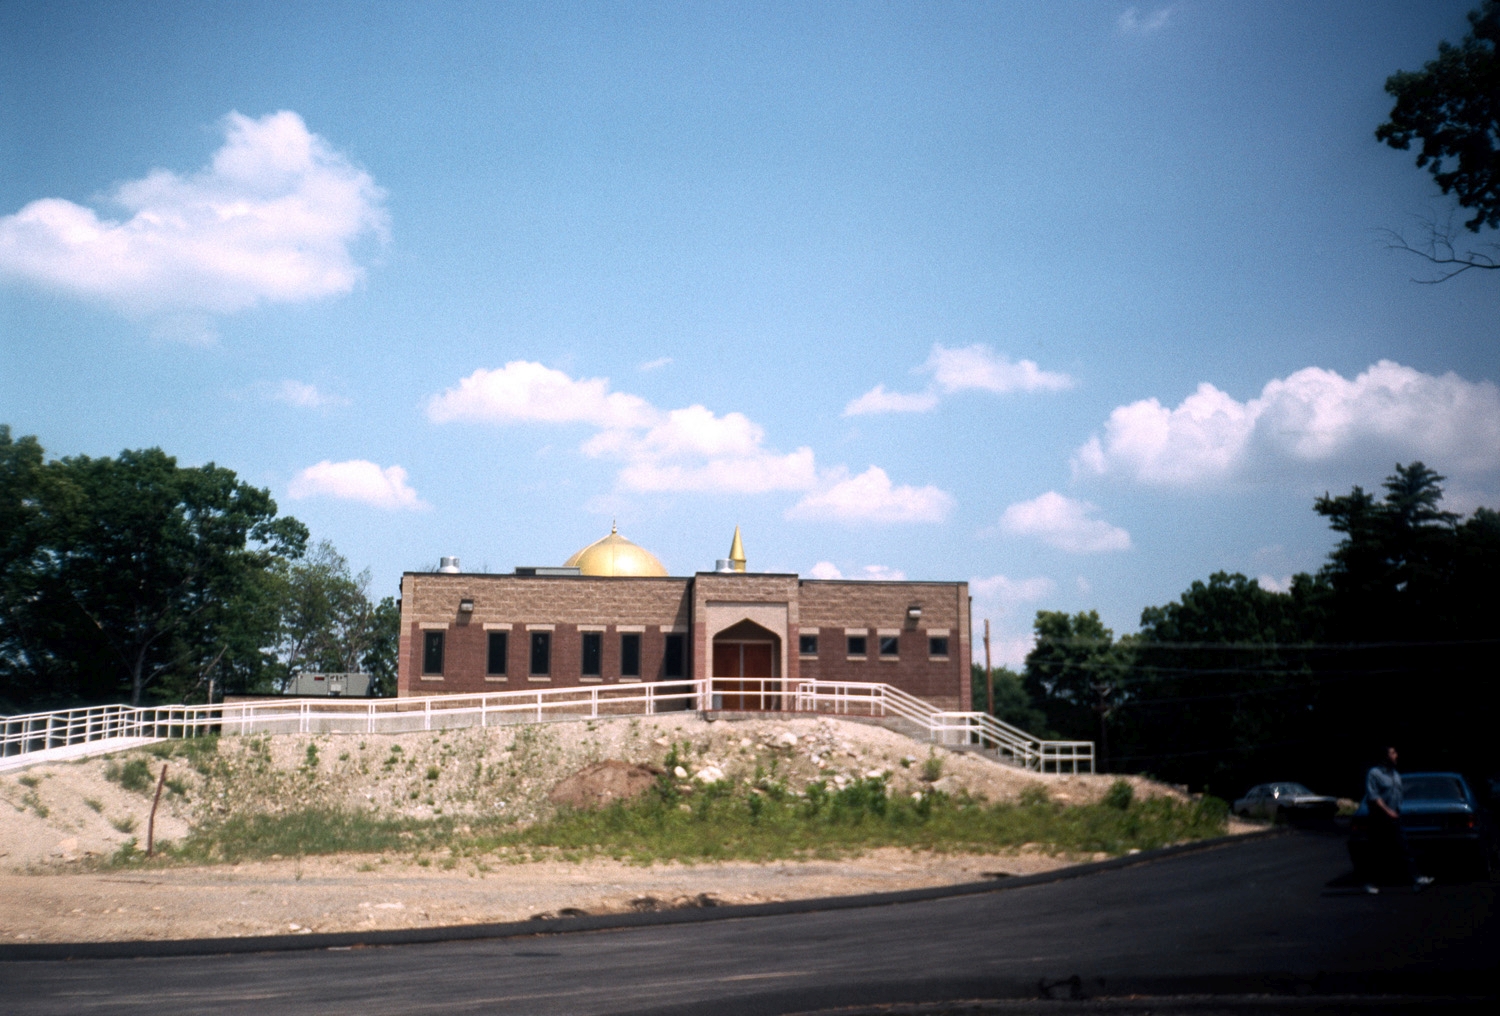 Masjid Al-Islam - Western facade seen from parking lot